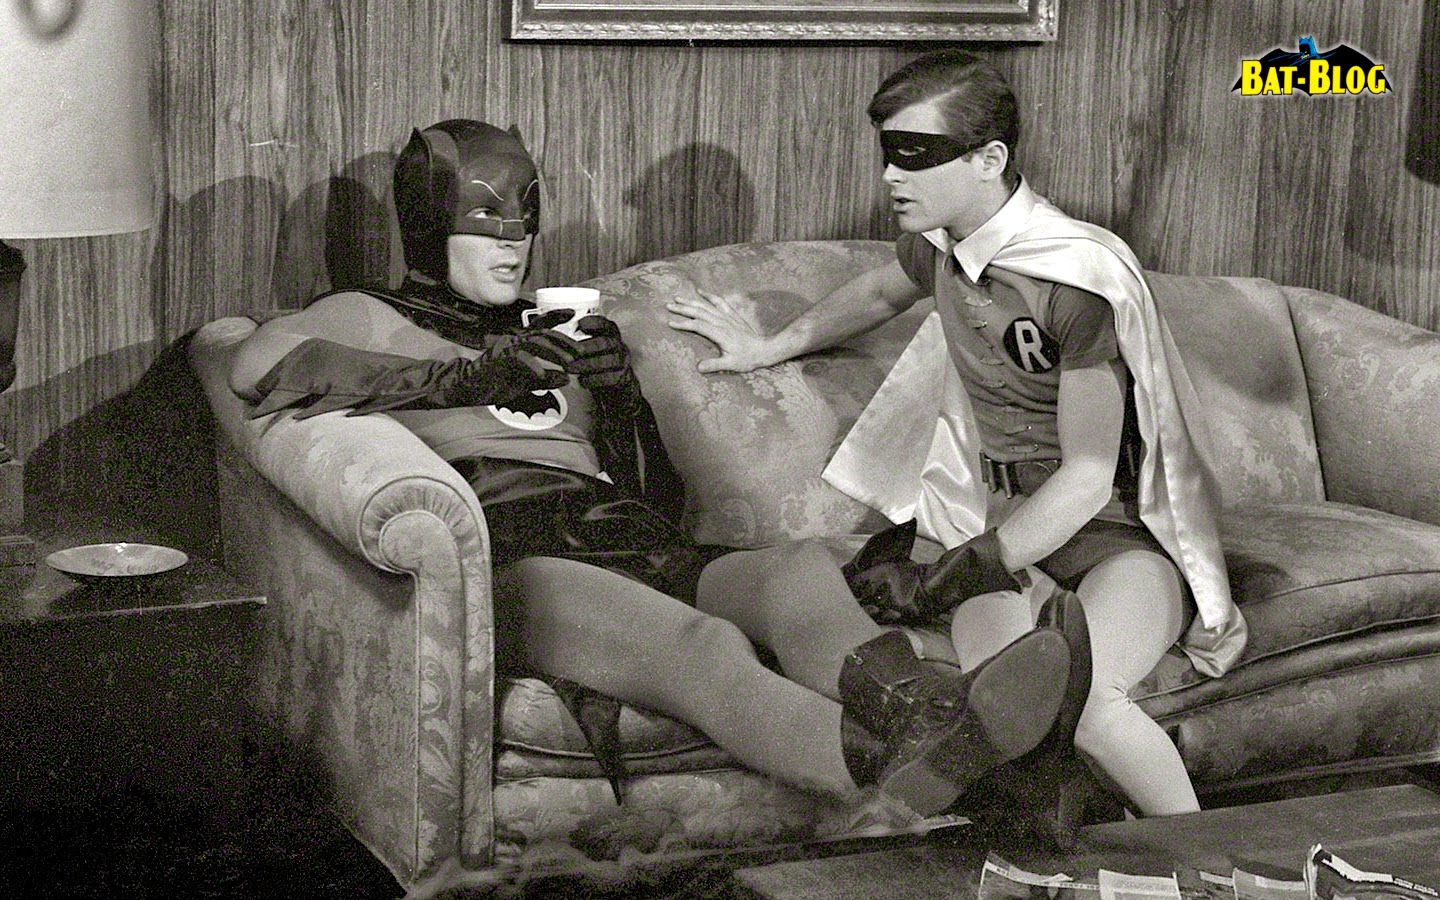 BAT - BLOG : BATMAN TOYS and COLLECTIBLES: Classic 1966 BATMAN TV ...